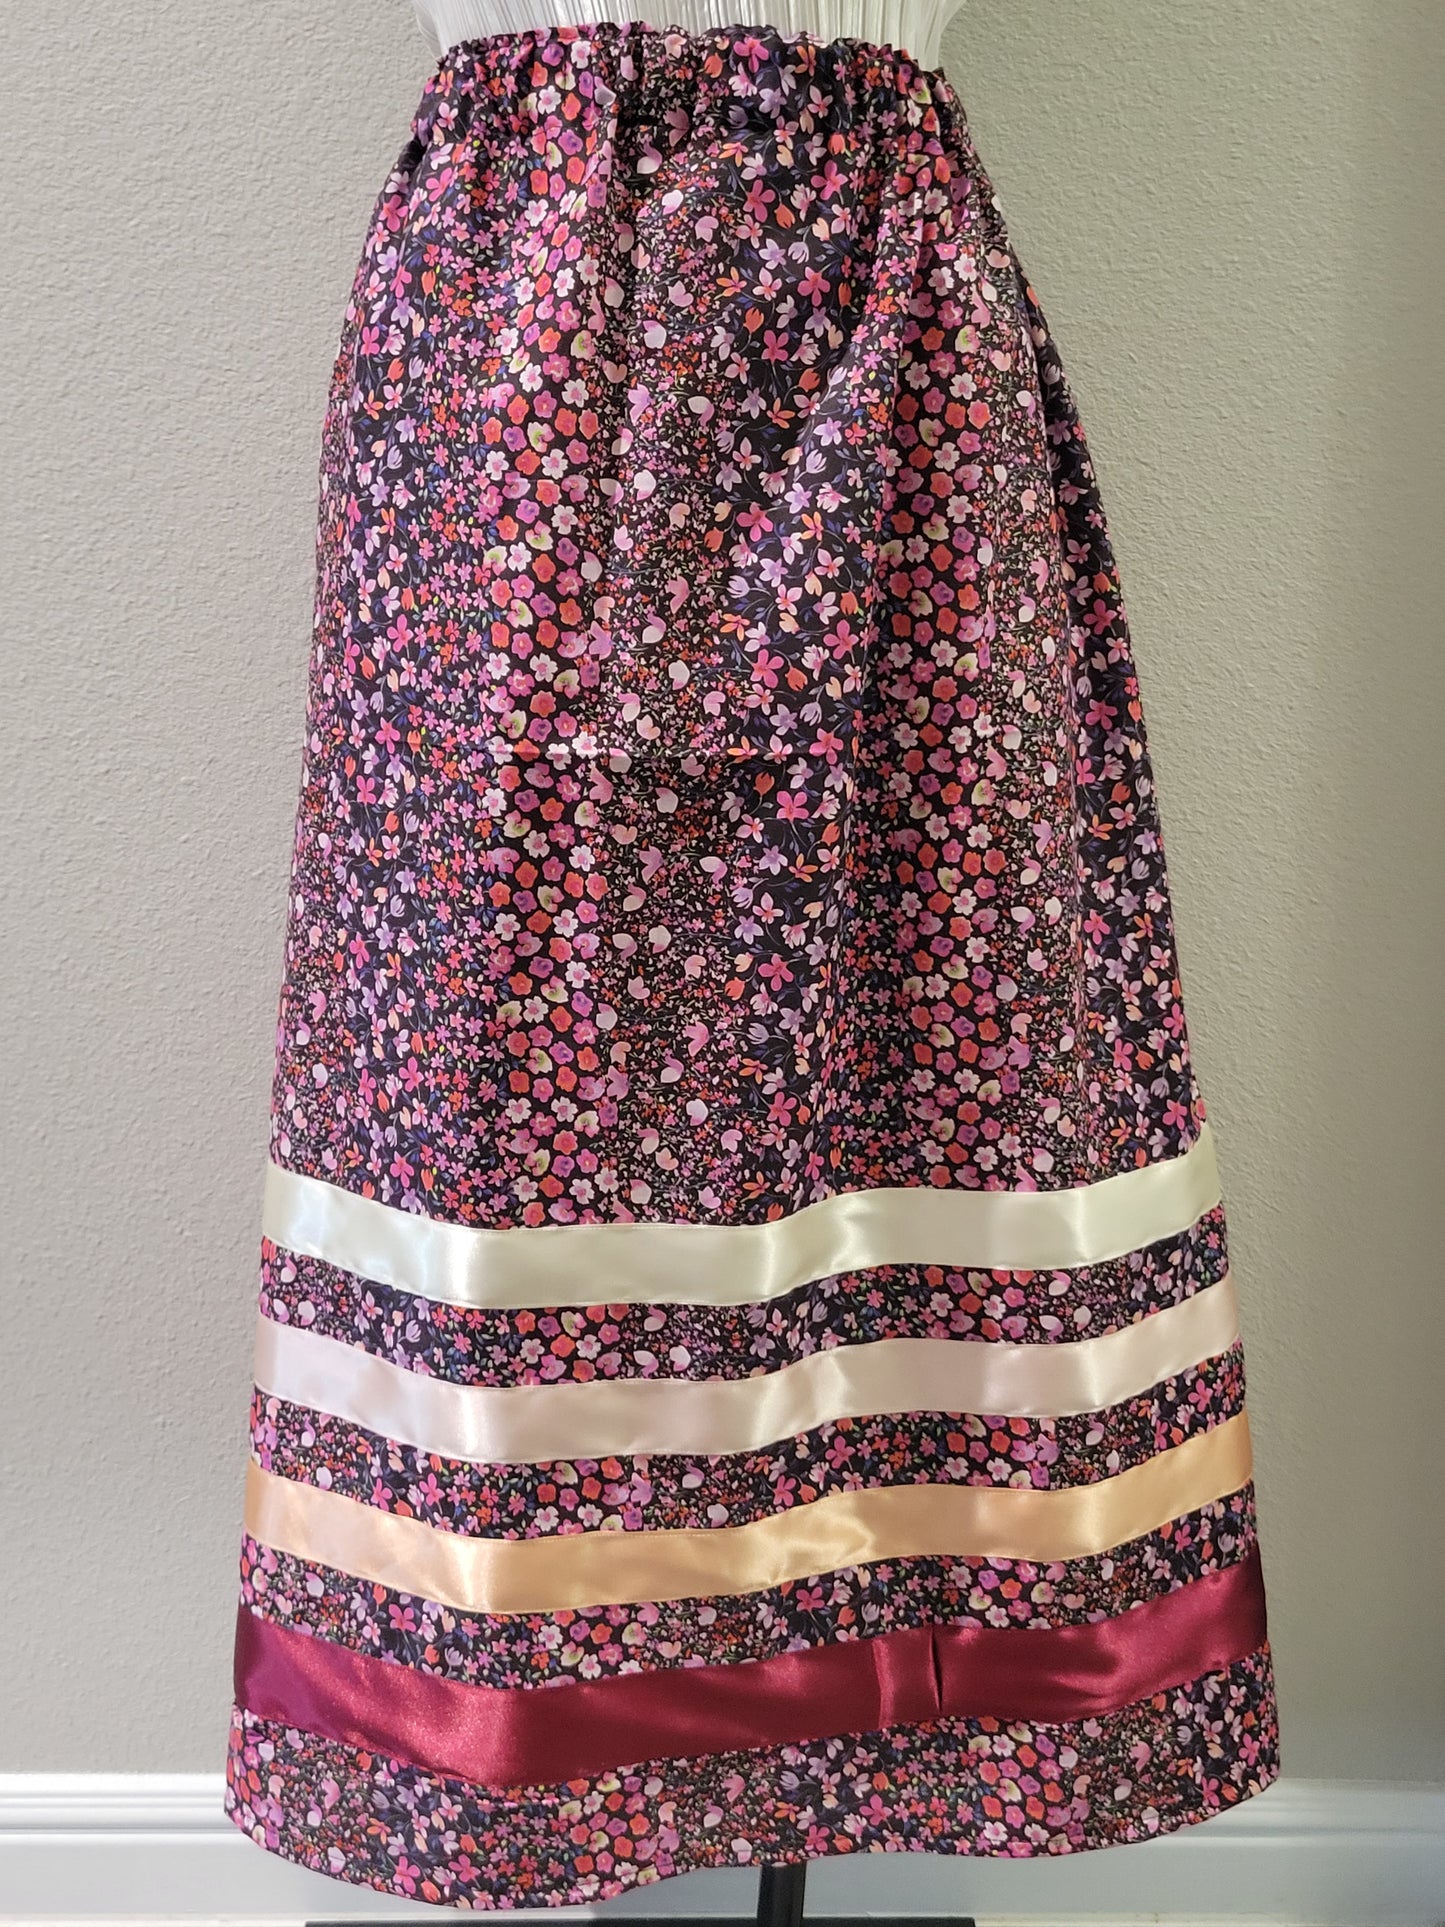 Ribbon Skirt #3